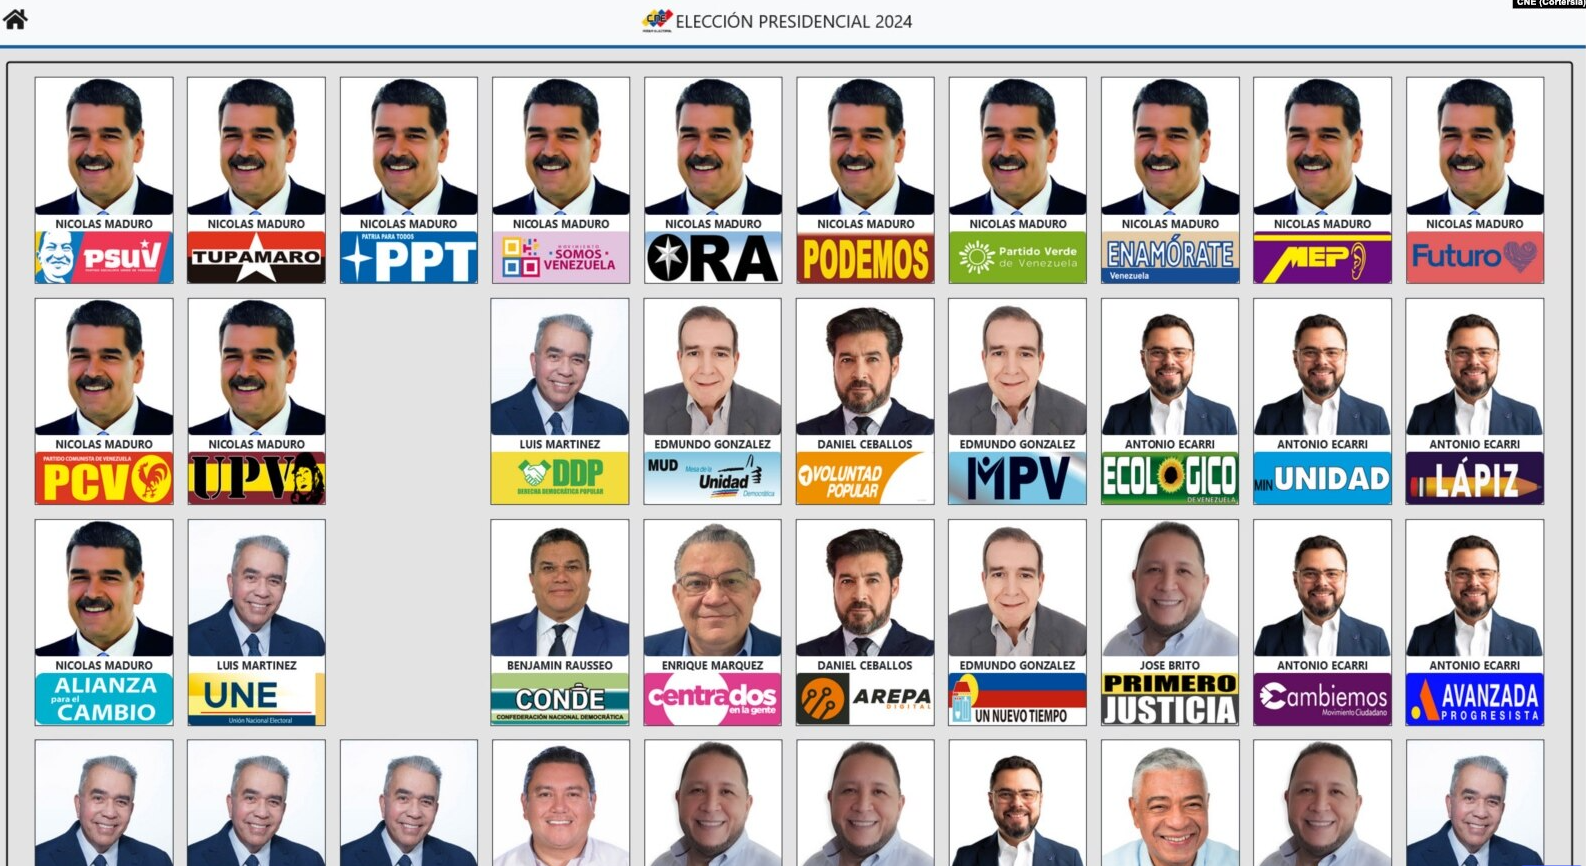 El rostro de Nicolás Maduro aparece 13 veces en la boleta electoral en Venezuela ¿por qué?